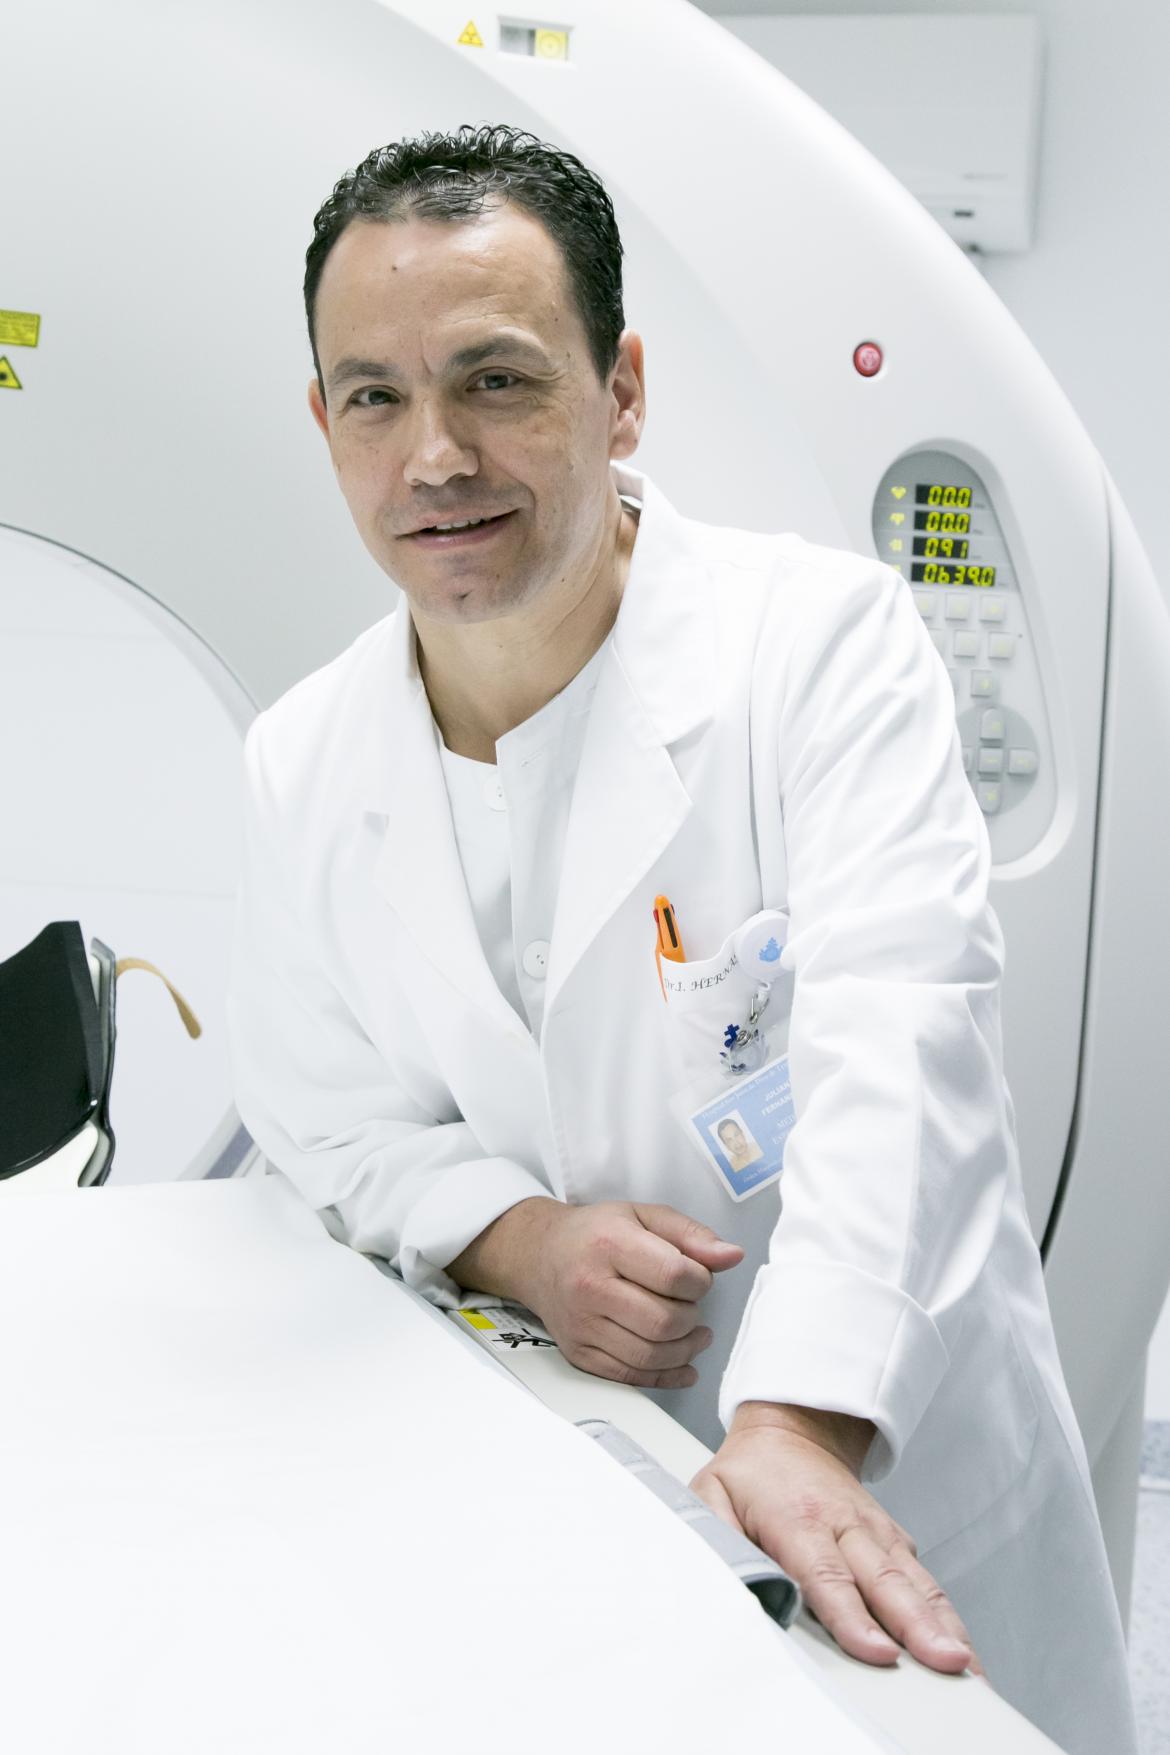 Entrevista a Julián Fernández, responsable del Servicio de radiología del hospital San Juan Dios de Tenerife